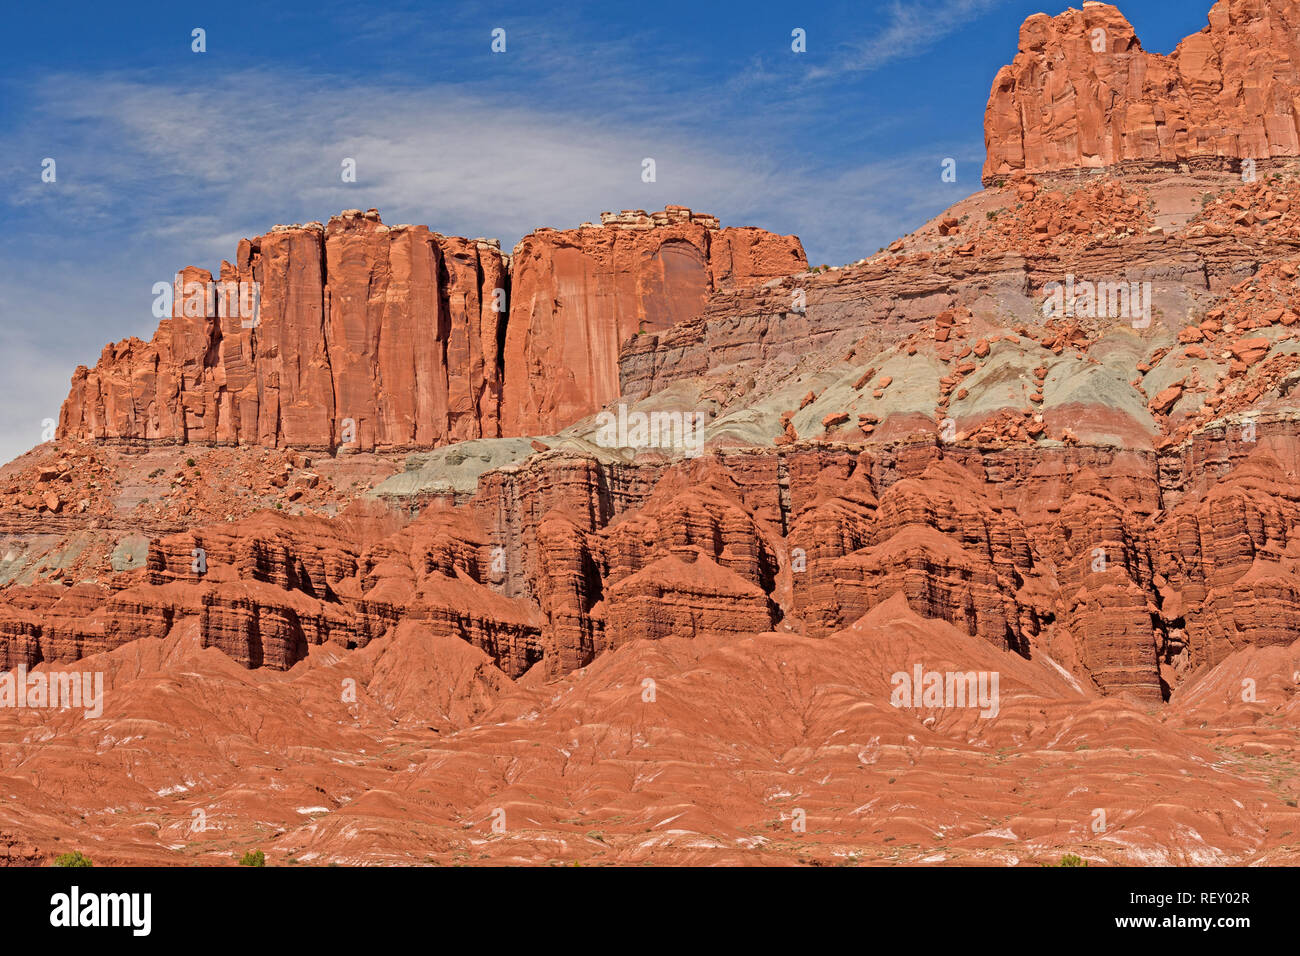 Dramatische rote Felsen und Formationen, die in der Wüste Capit 0 l Reef National Park in Utah Stockfoto